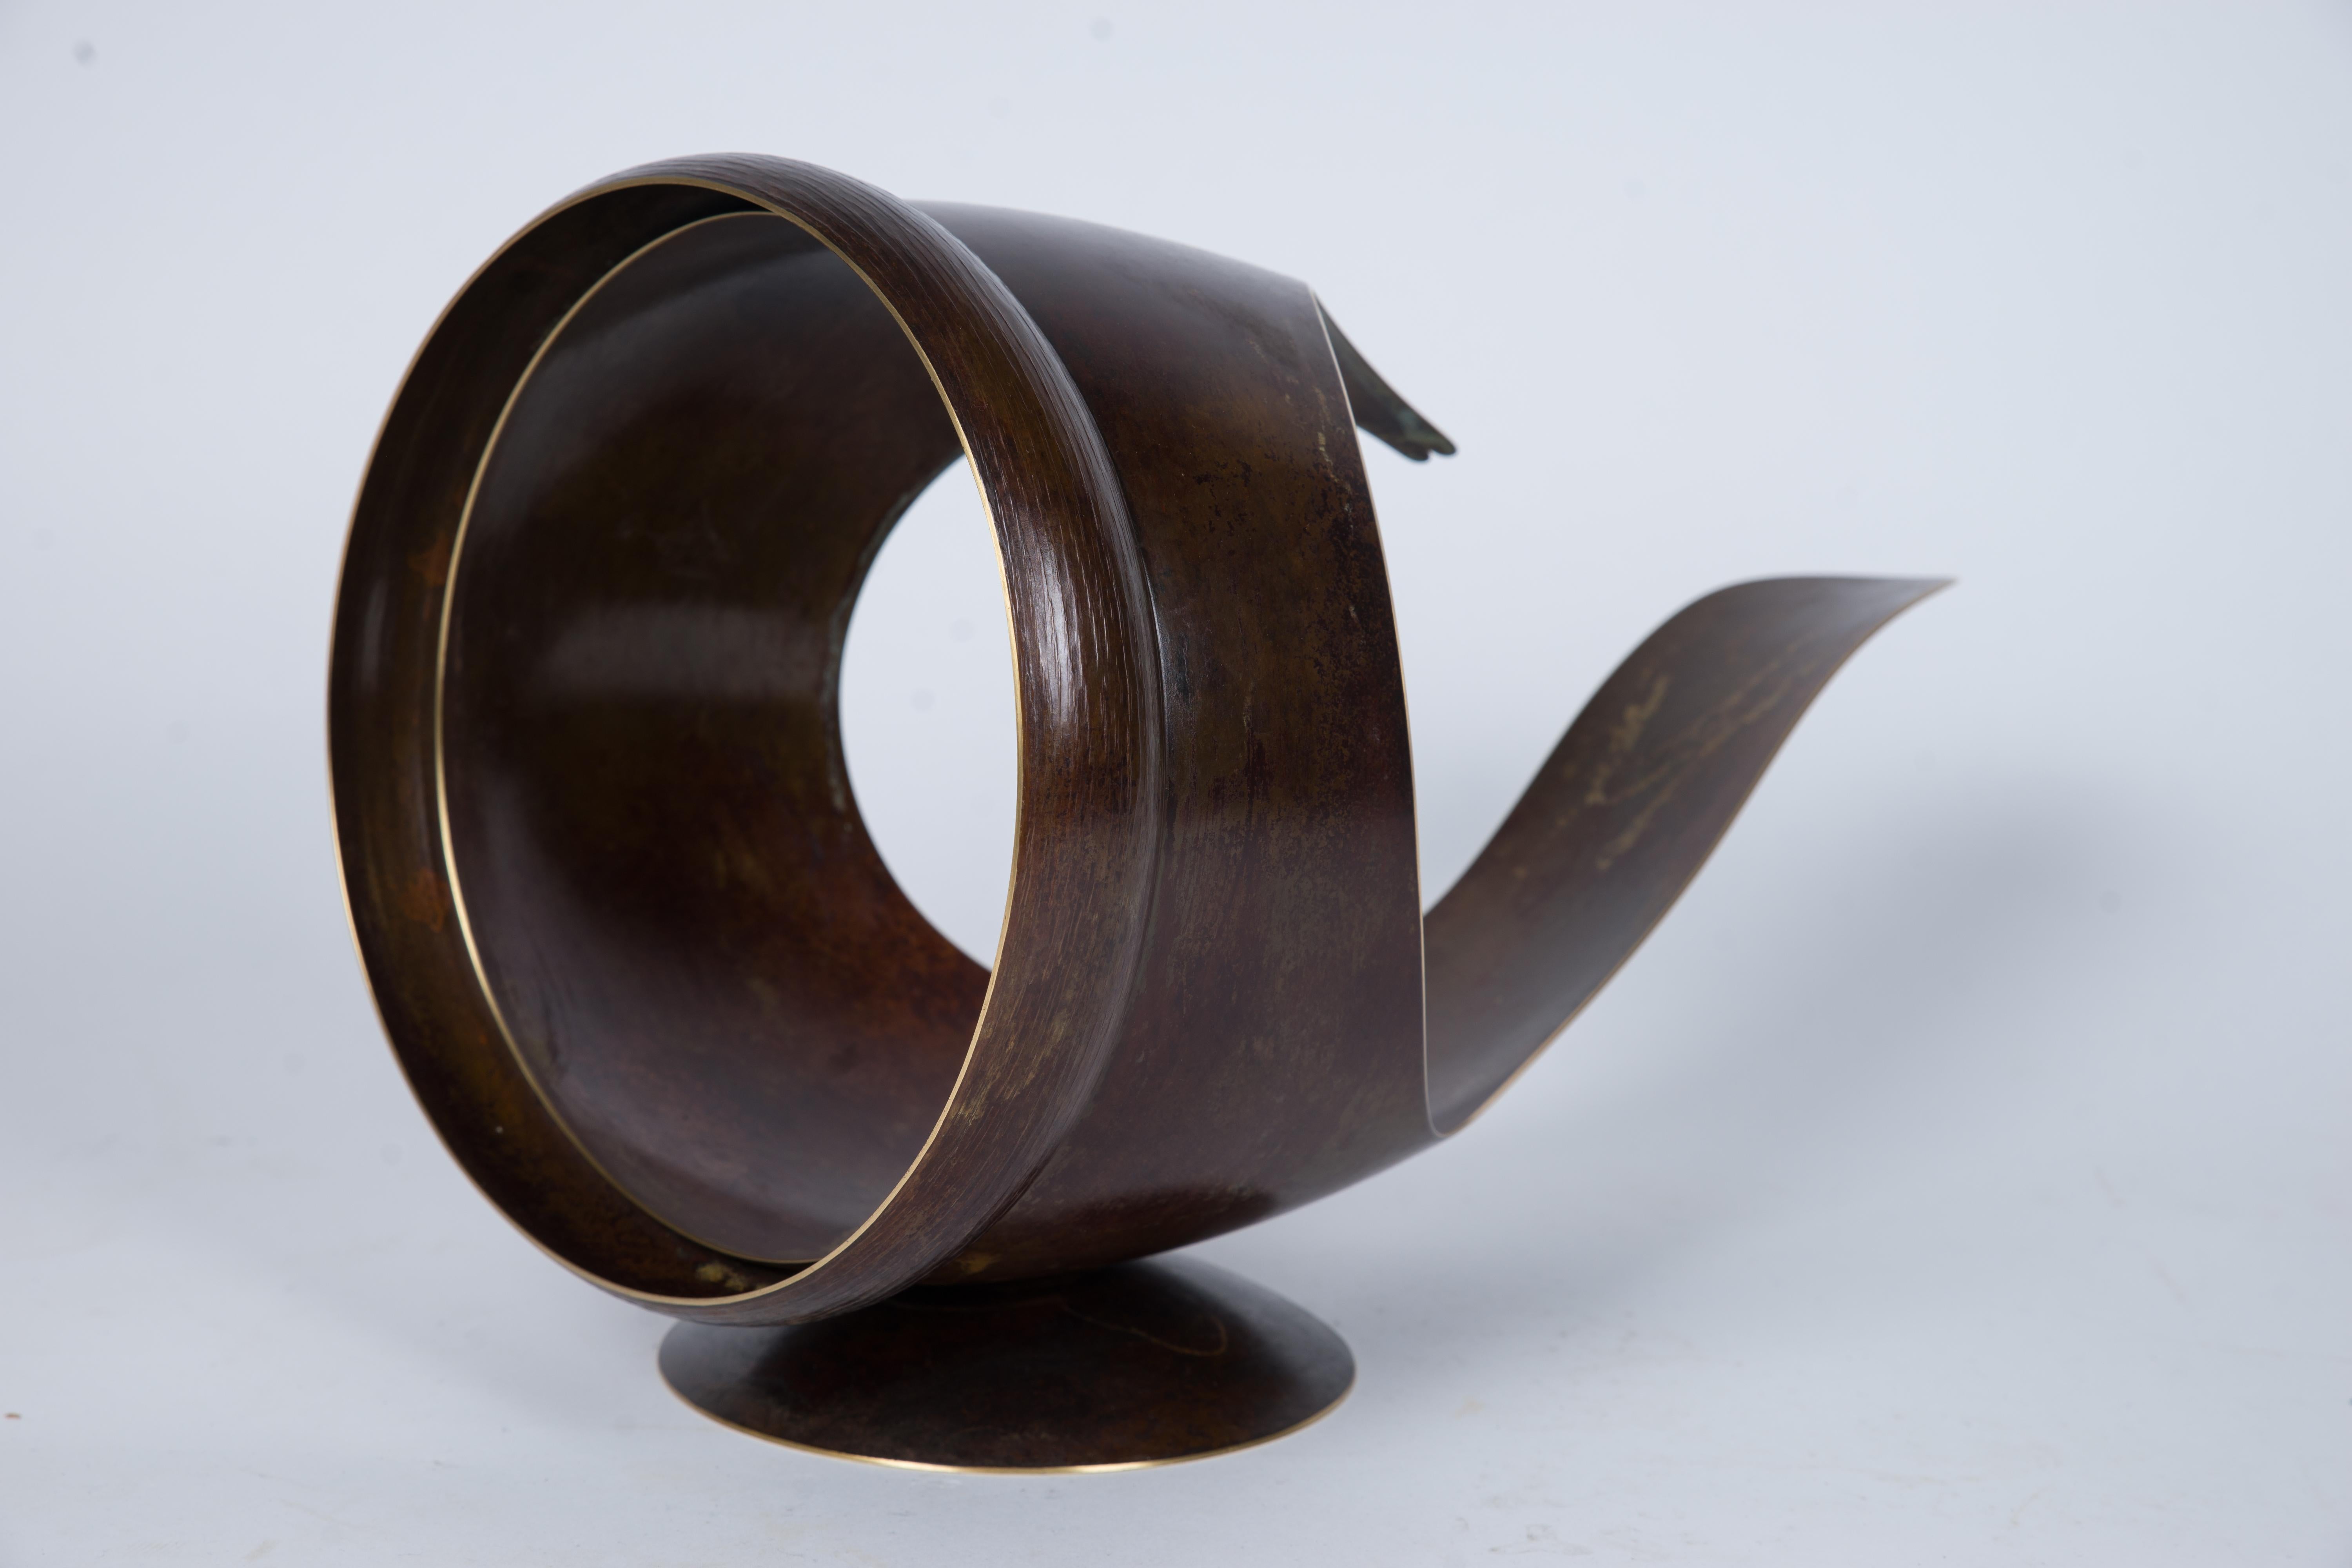 Elie Hirsch Abstract Sculpture - "Tell It" Brass Sculpture